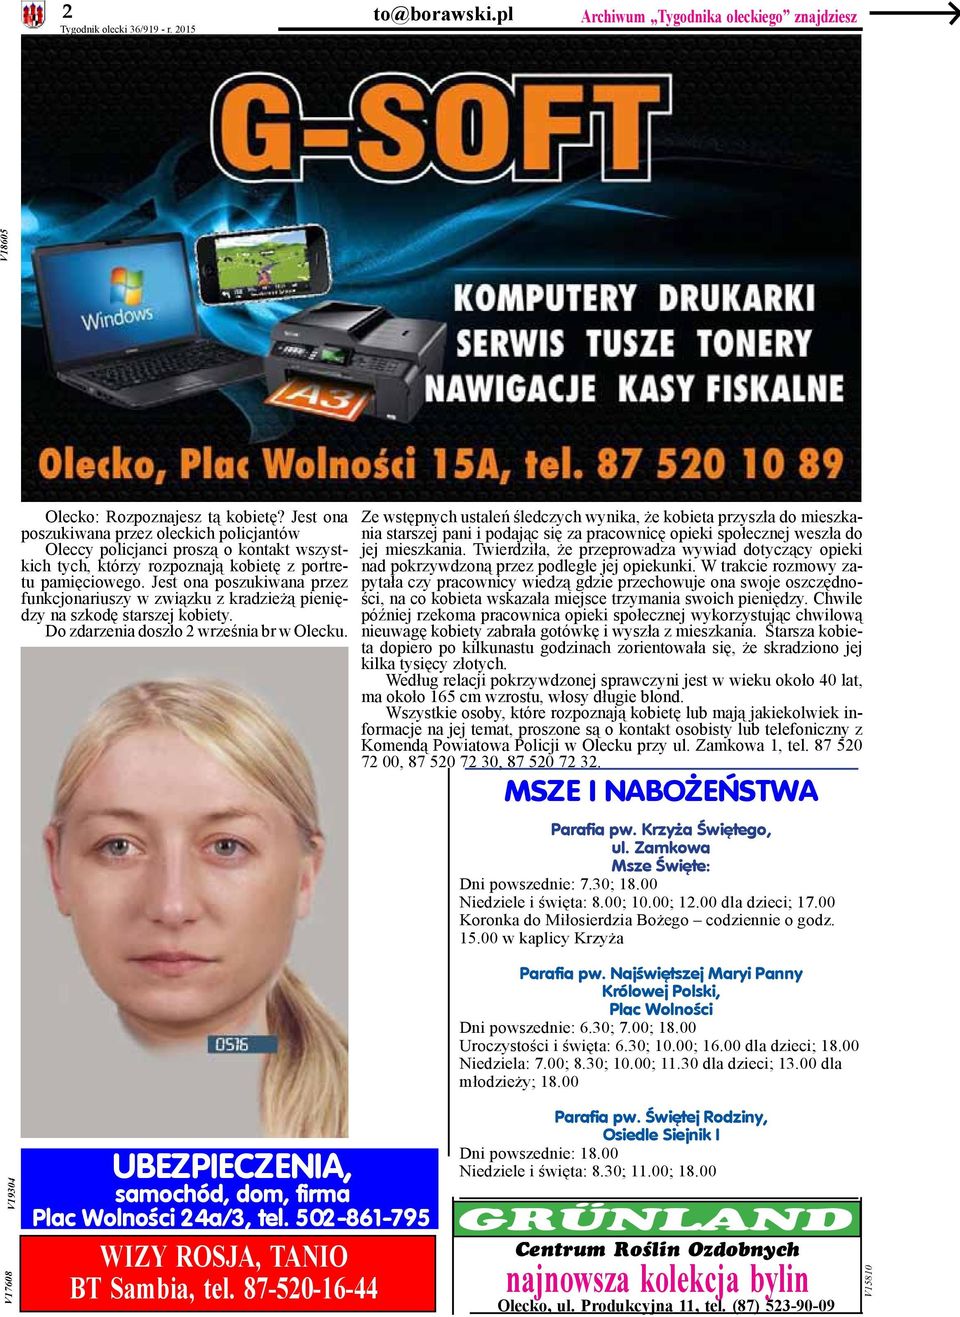 Jest ona poszukiwana przez funkcjonariuszy w związku z kradzieżą pieniędzy na szkodę starszej kobiety. Do zdarzenia doszło 2 września br w Olecku.